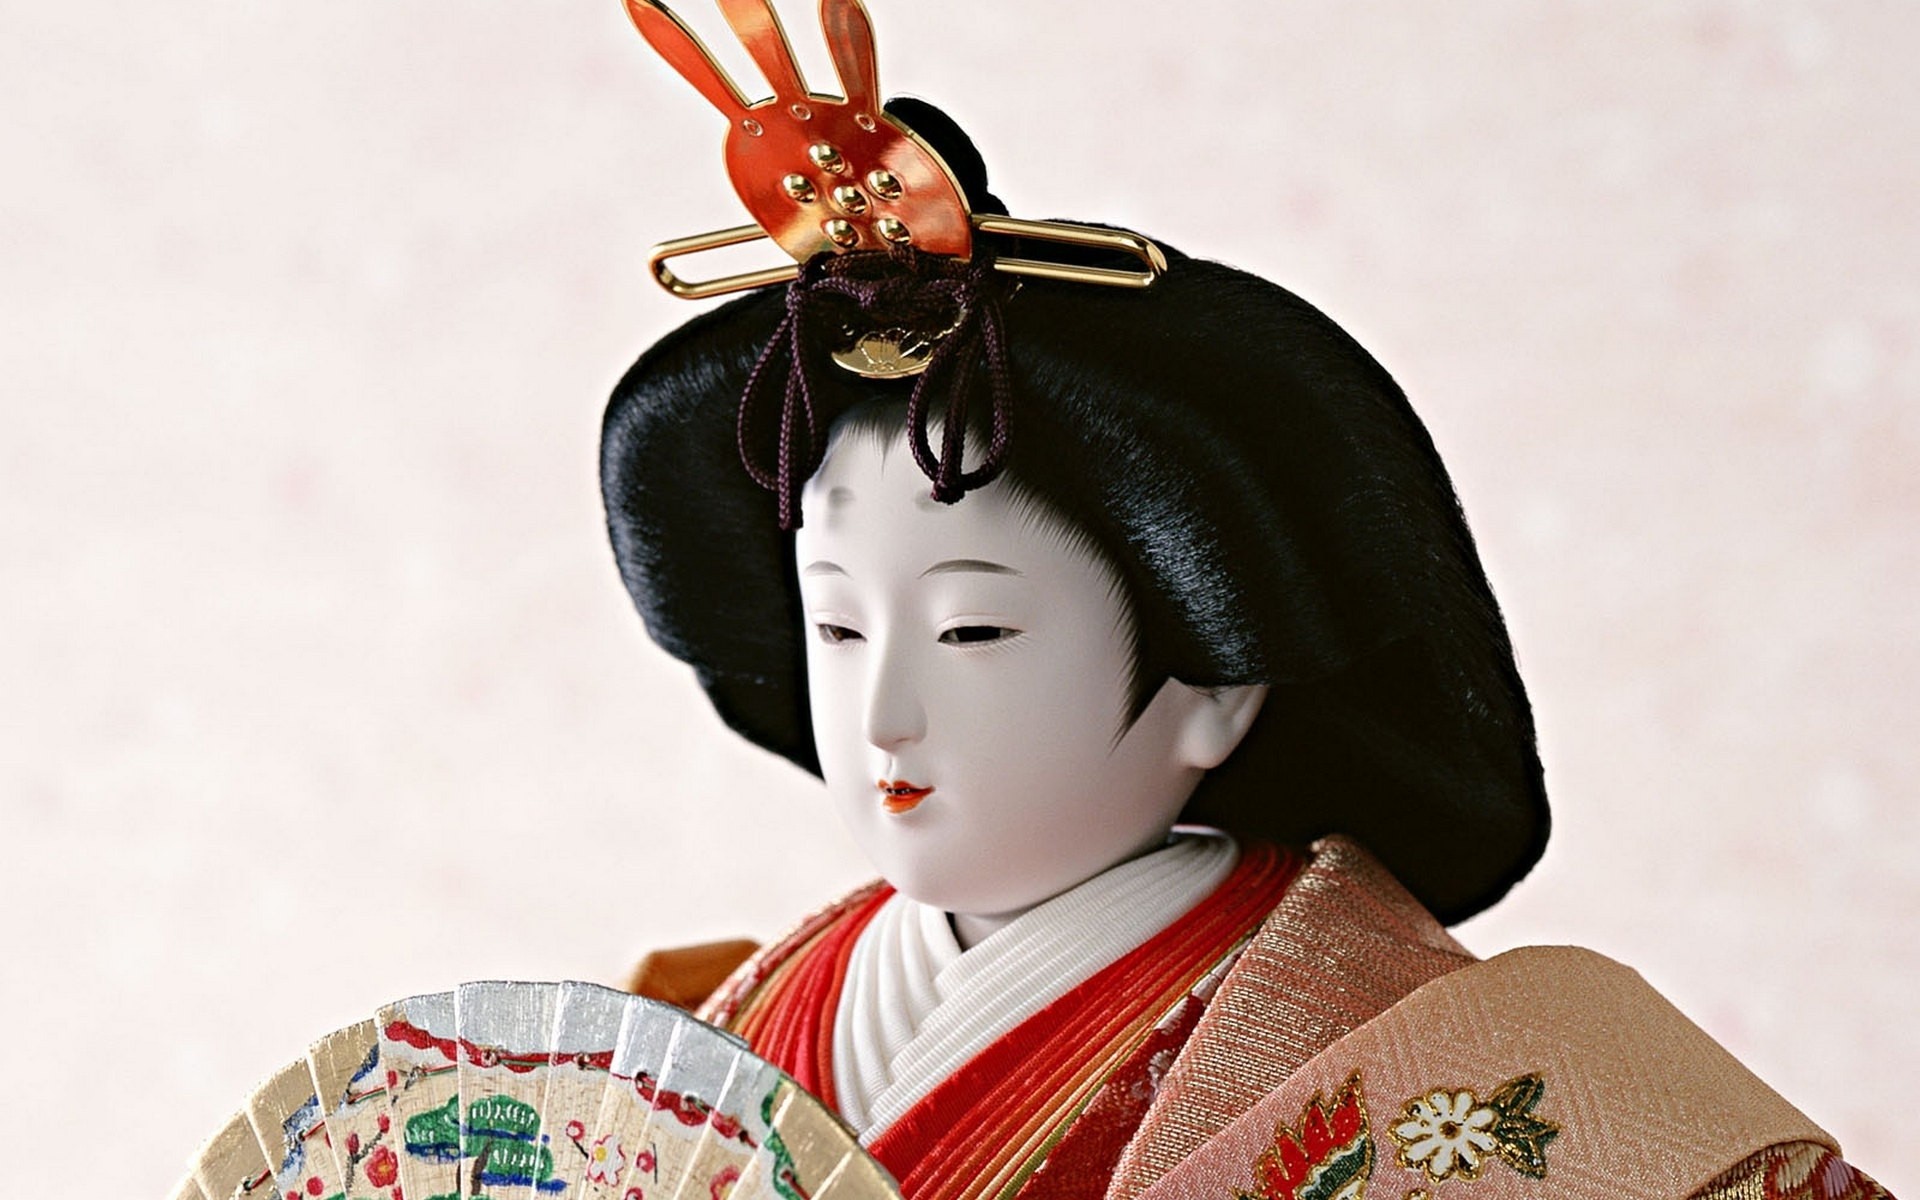 1920x1200 Japanese dolls craft traditional art statue asian oriental culture geisha  face wallpaper |  | 32359 | WallpaperUP